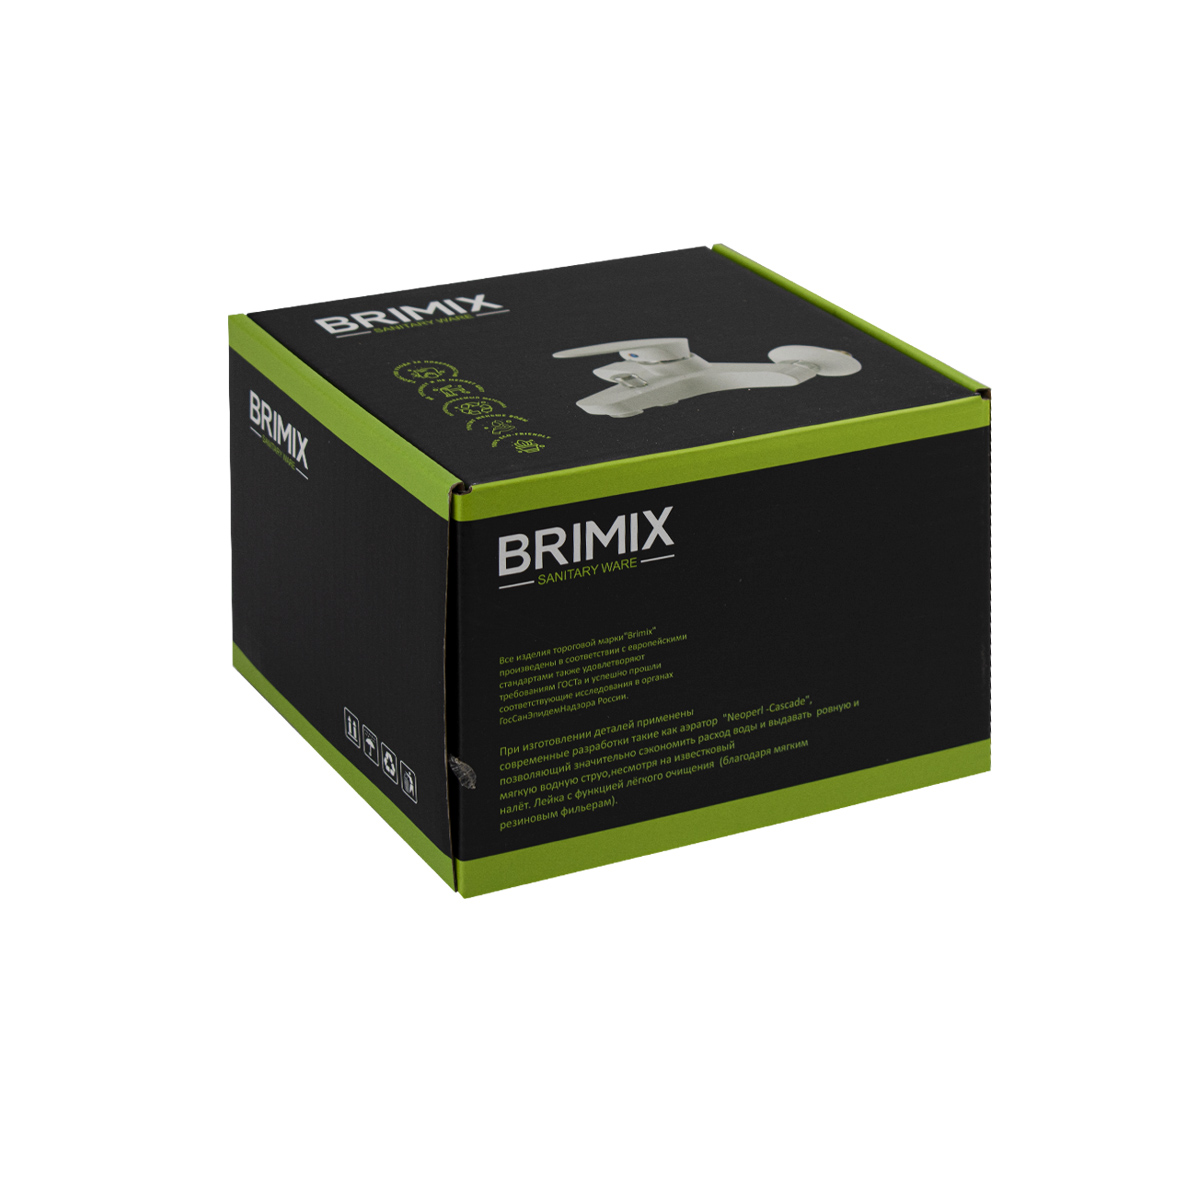 BRIMIX - Смеситель в ванную, короткий излив, шаровый, из высокопрочного пластика АБС, БЕЛЫЙ